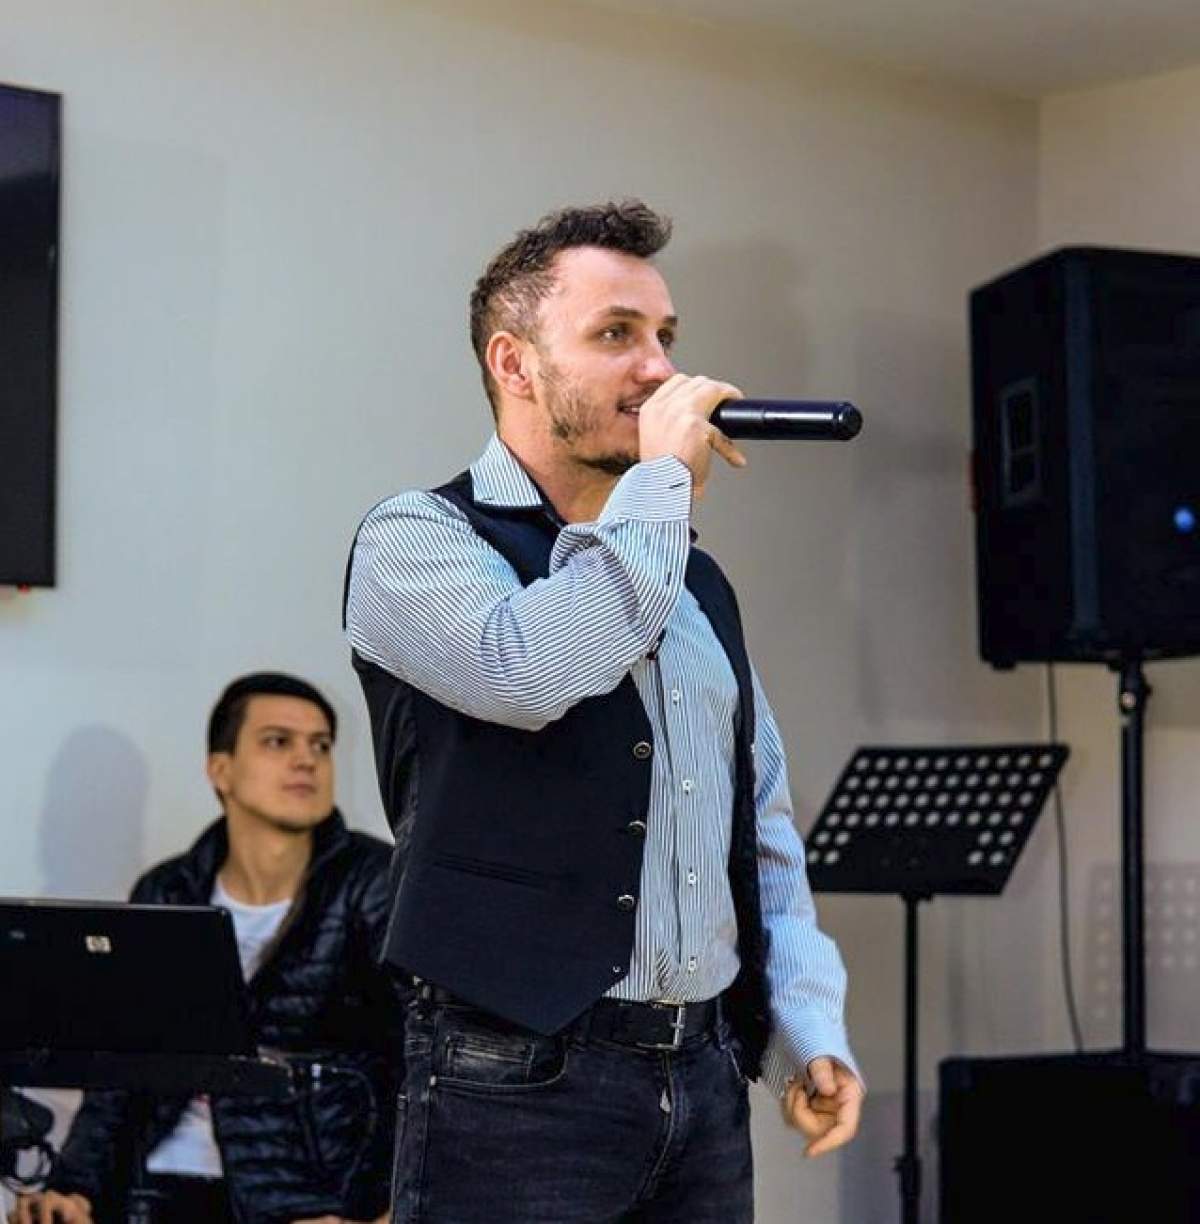 VIDEO / Reacţia lui Mihai Trăistariu, după finala Eurovision: "E o politică cruntă. Dacă aş fi câştigat eu, ar fi fost groaznic"